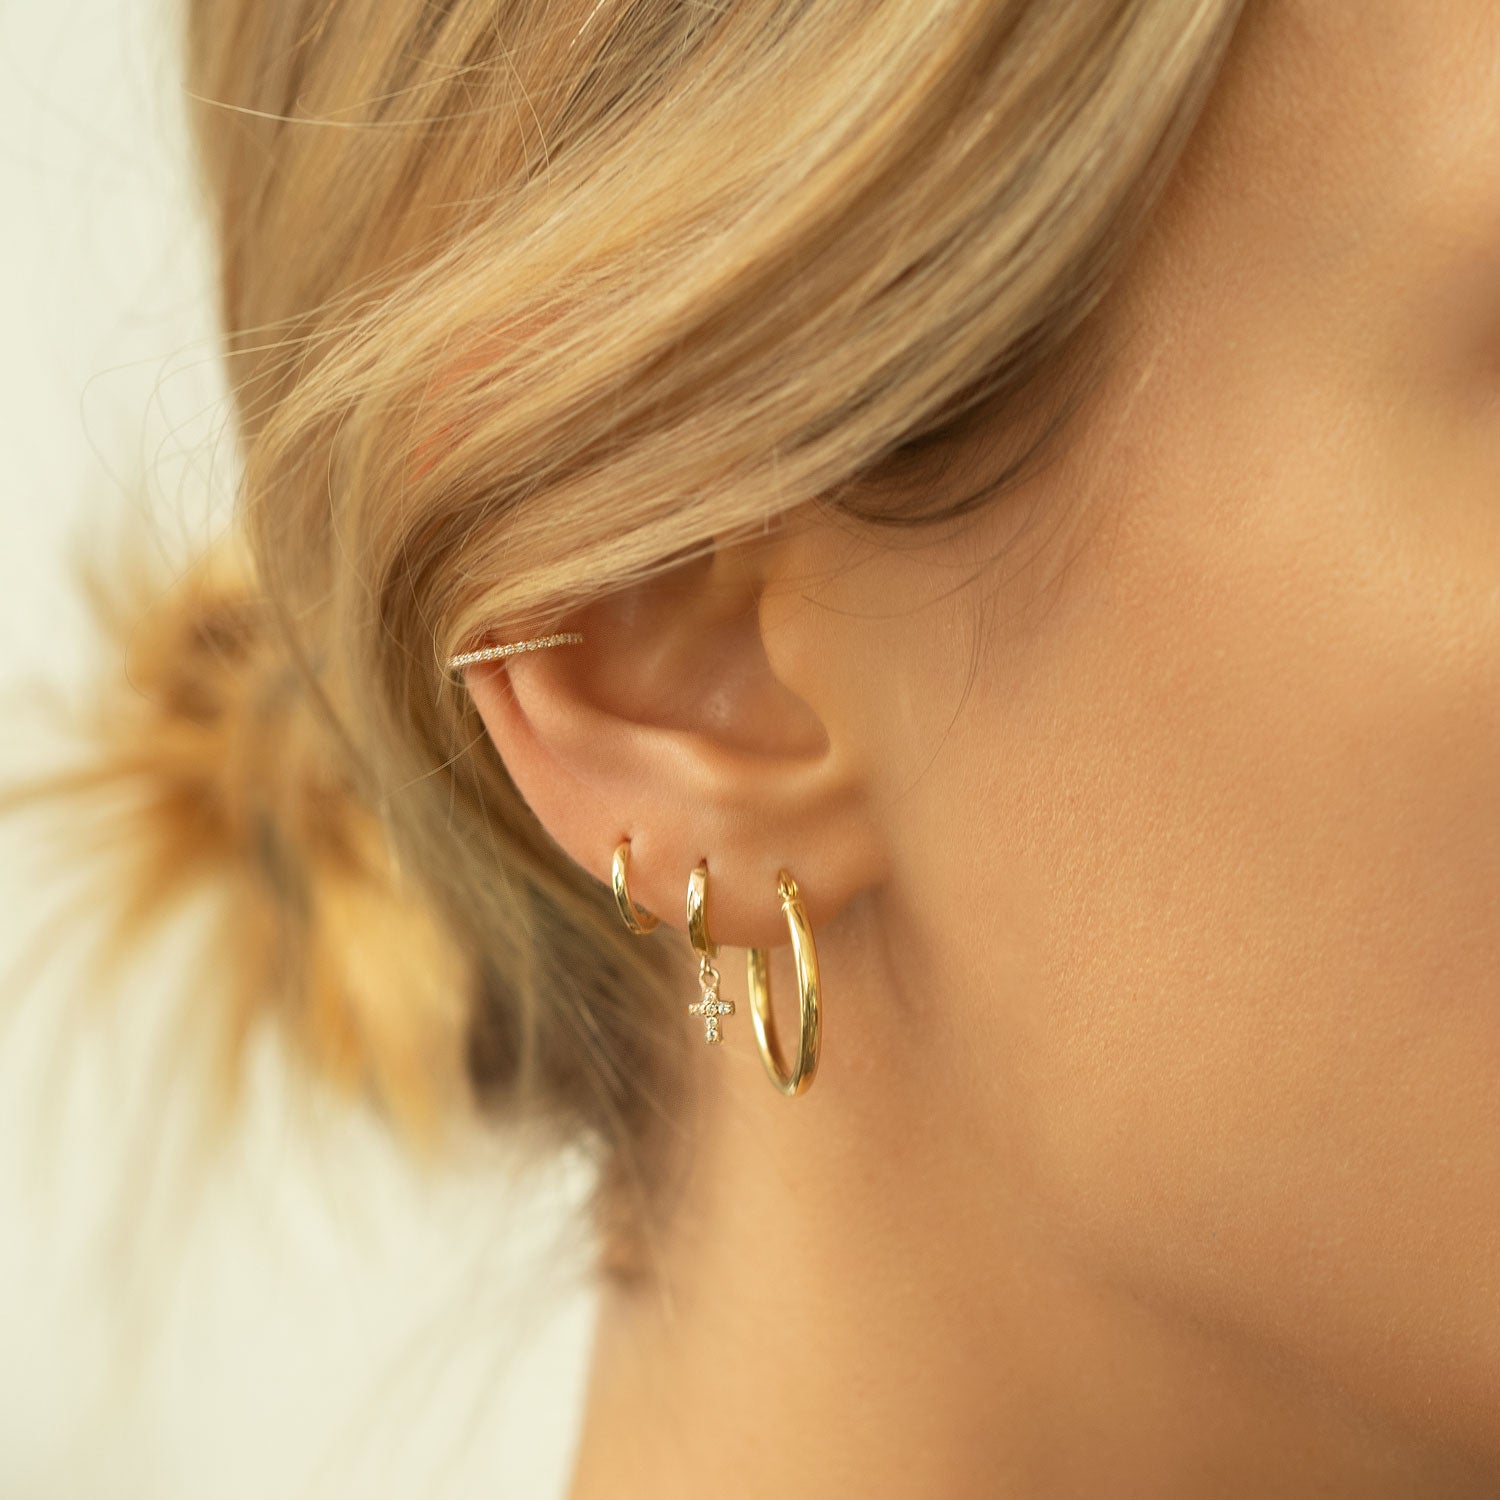 Gold Hoop Earrings | Small Gold Hoop Earrings | 9ct Gold Hoop Earrings